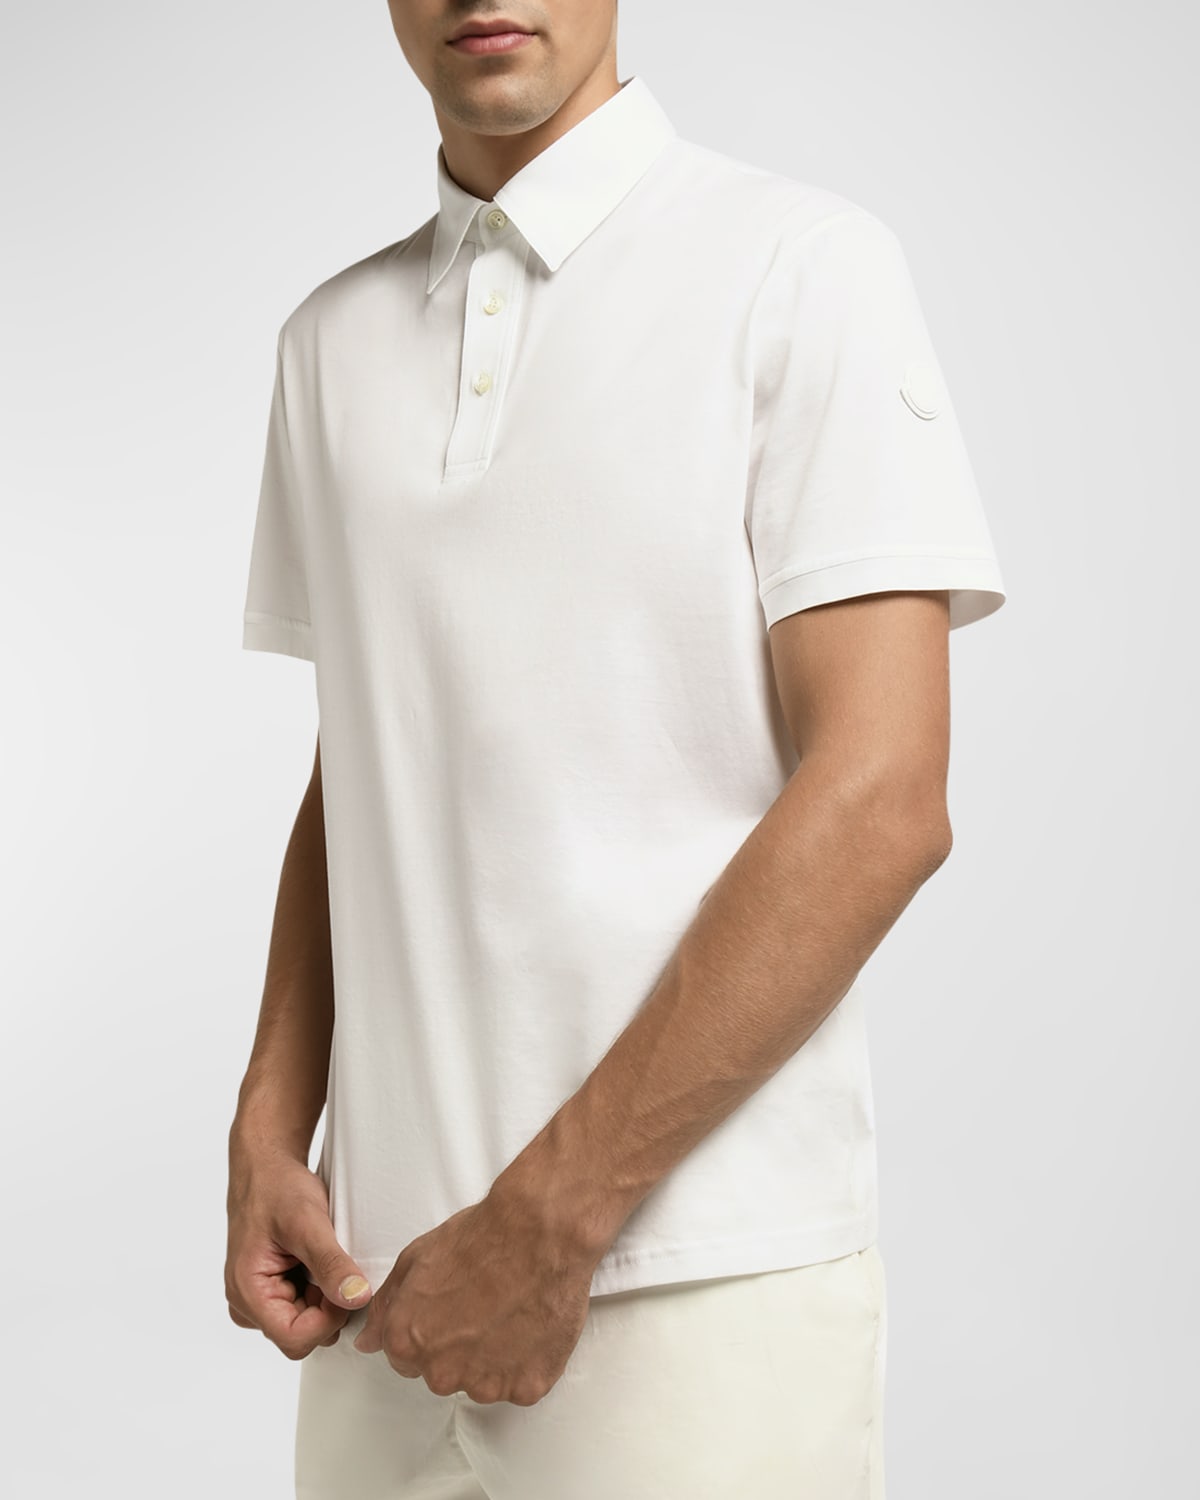 Men's Soft Knit Polo Shirt